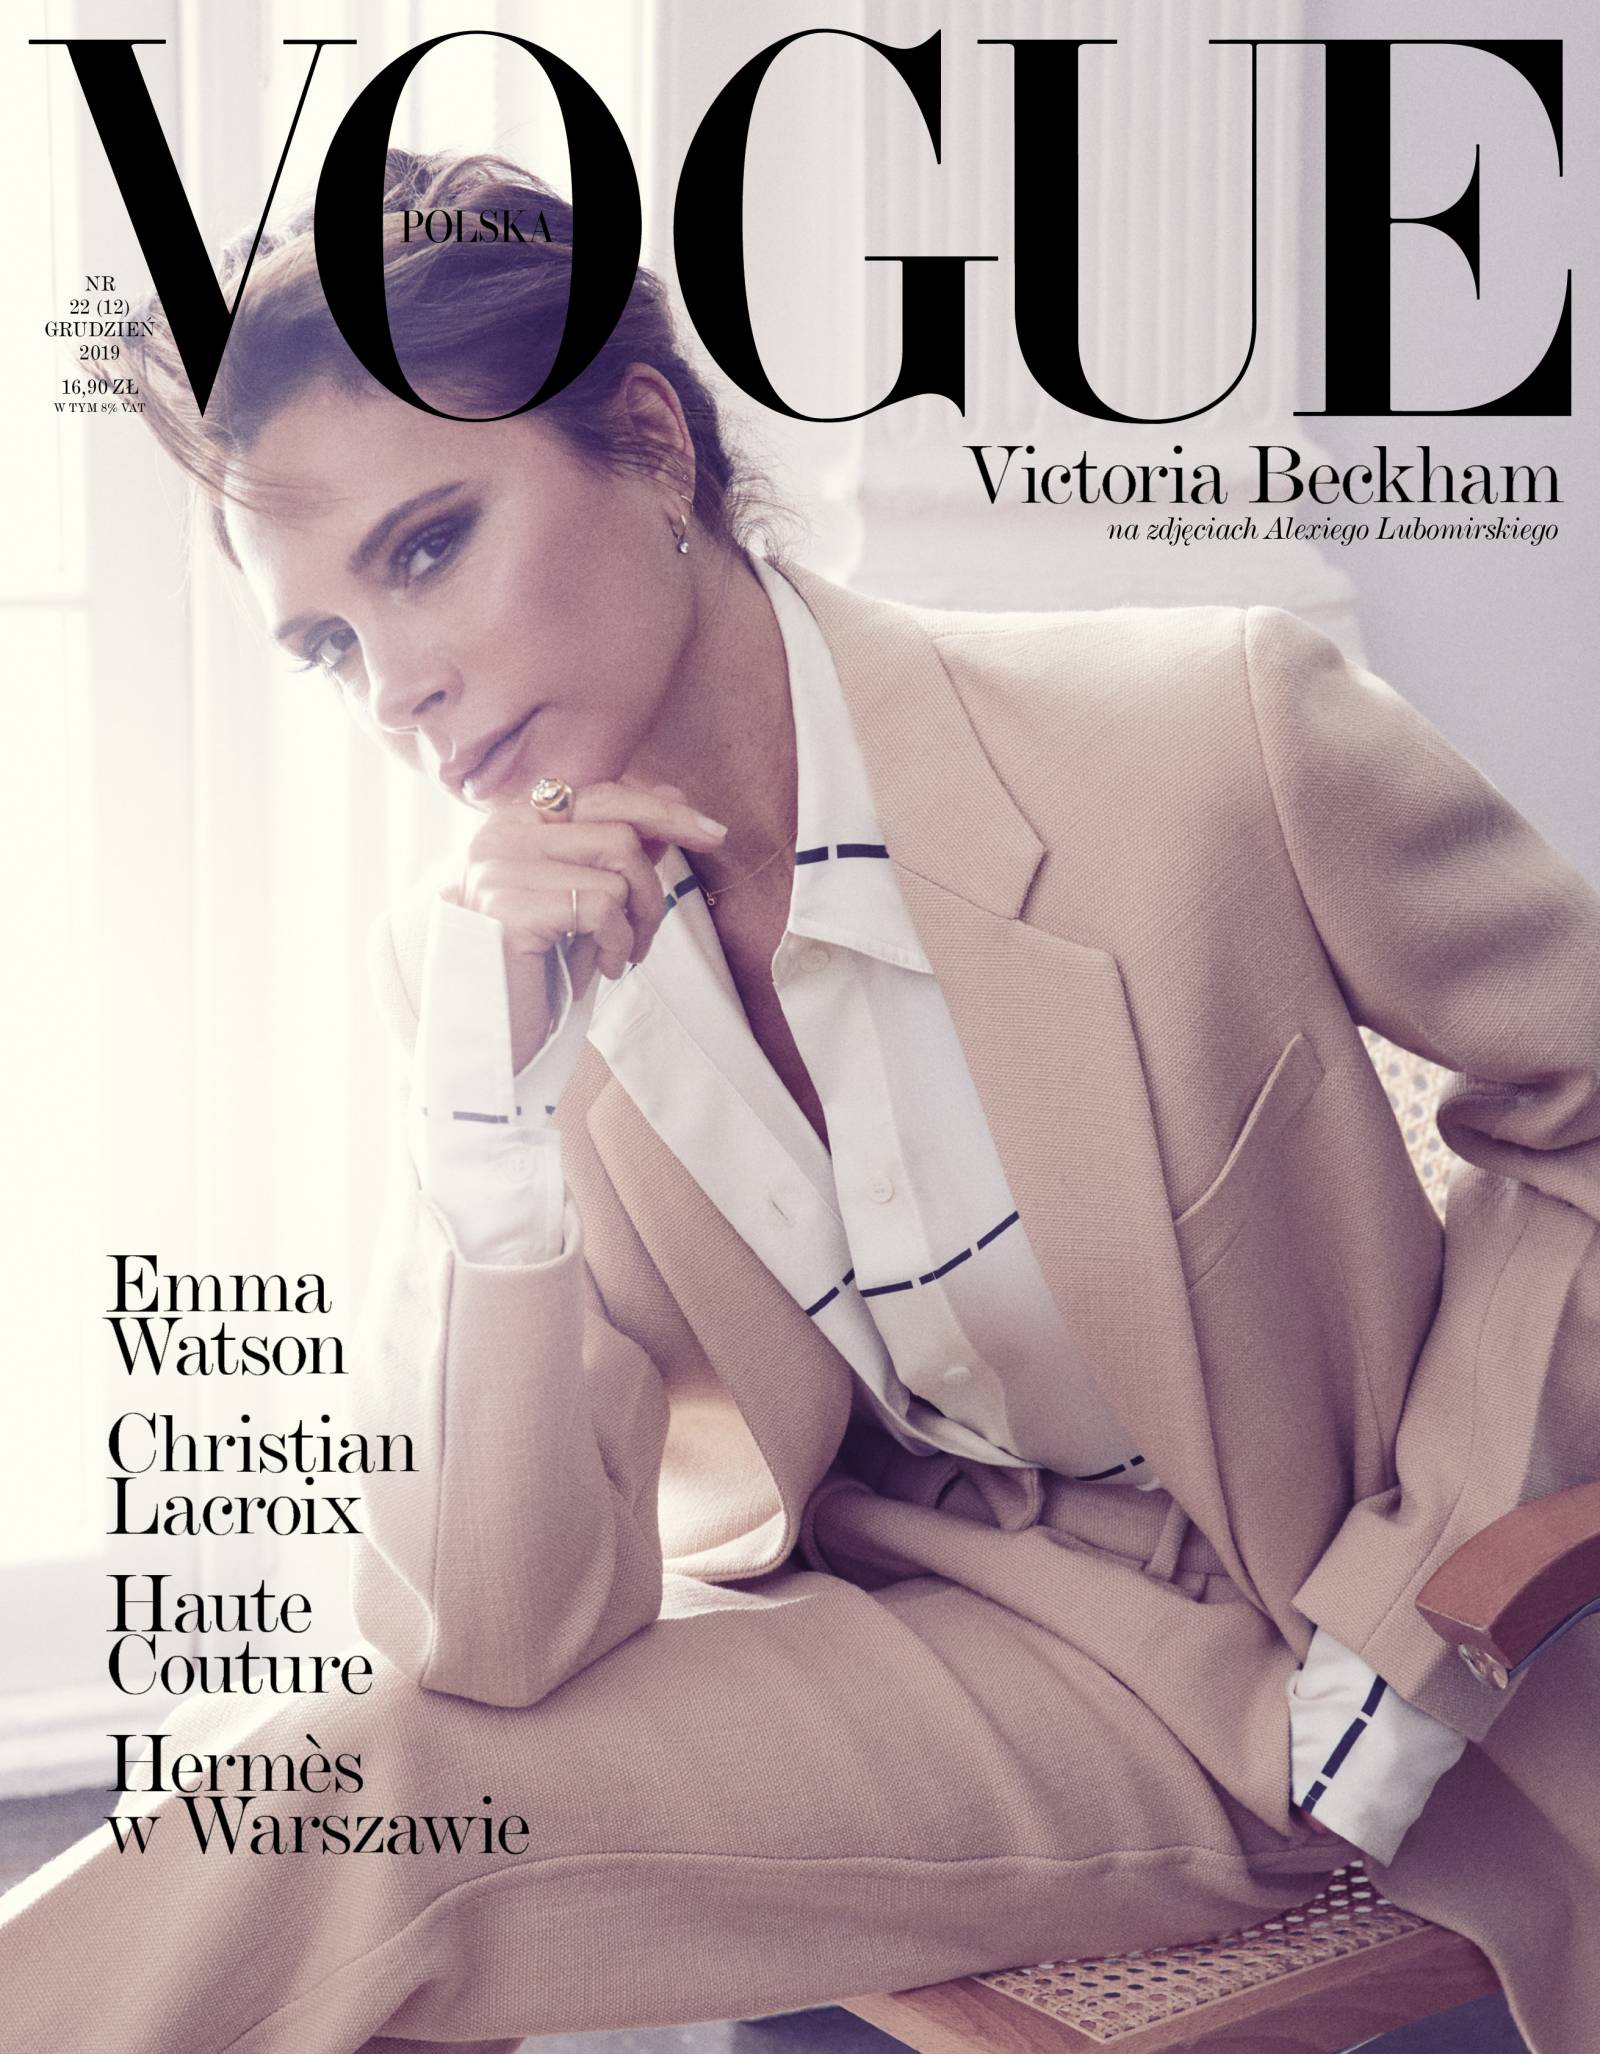 Okładka grudniowego wydania Vogue Polska (Fot. Alexi Lubomirski)